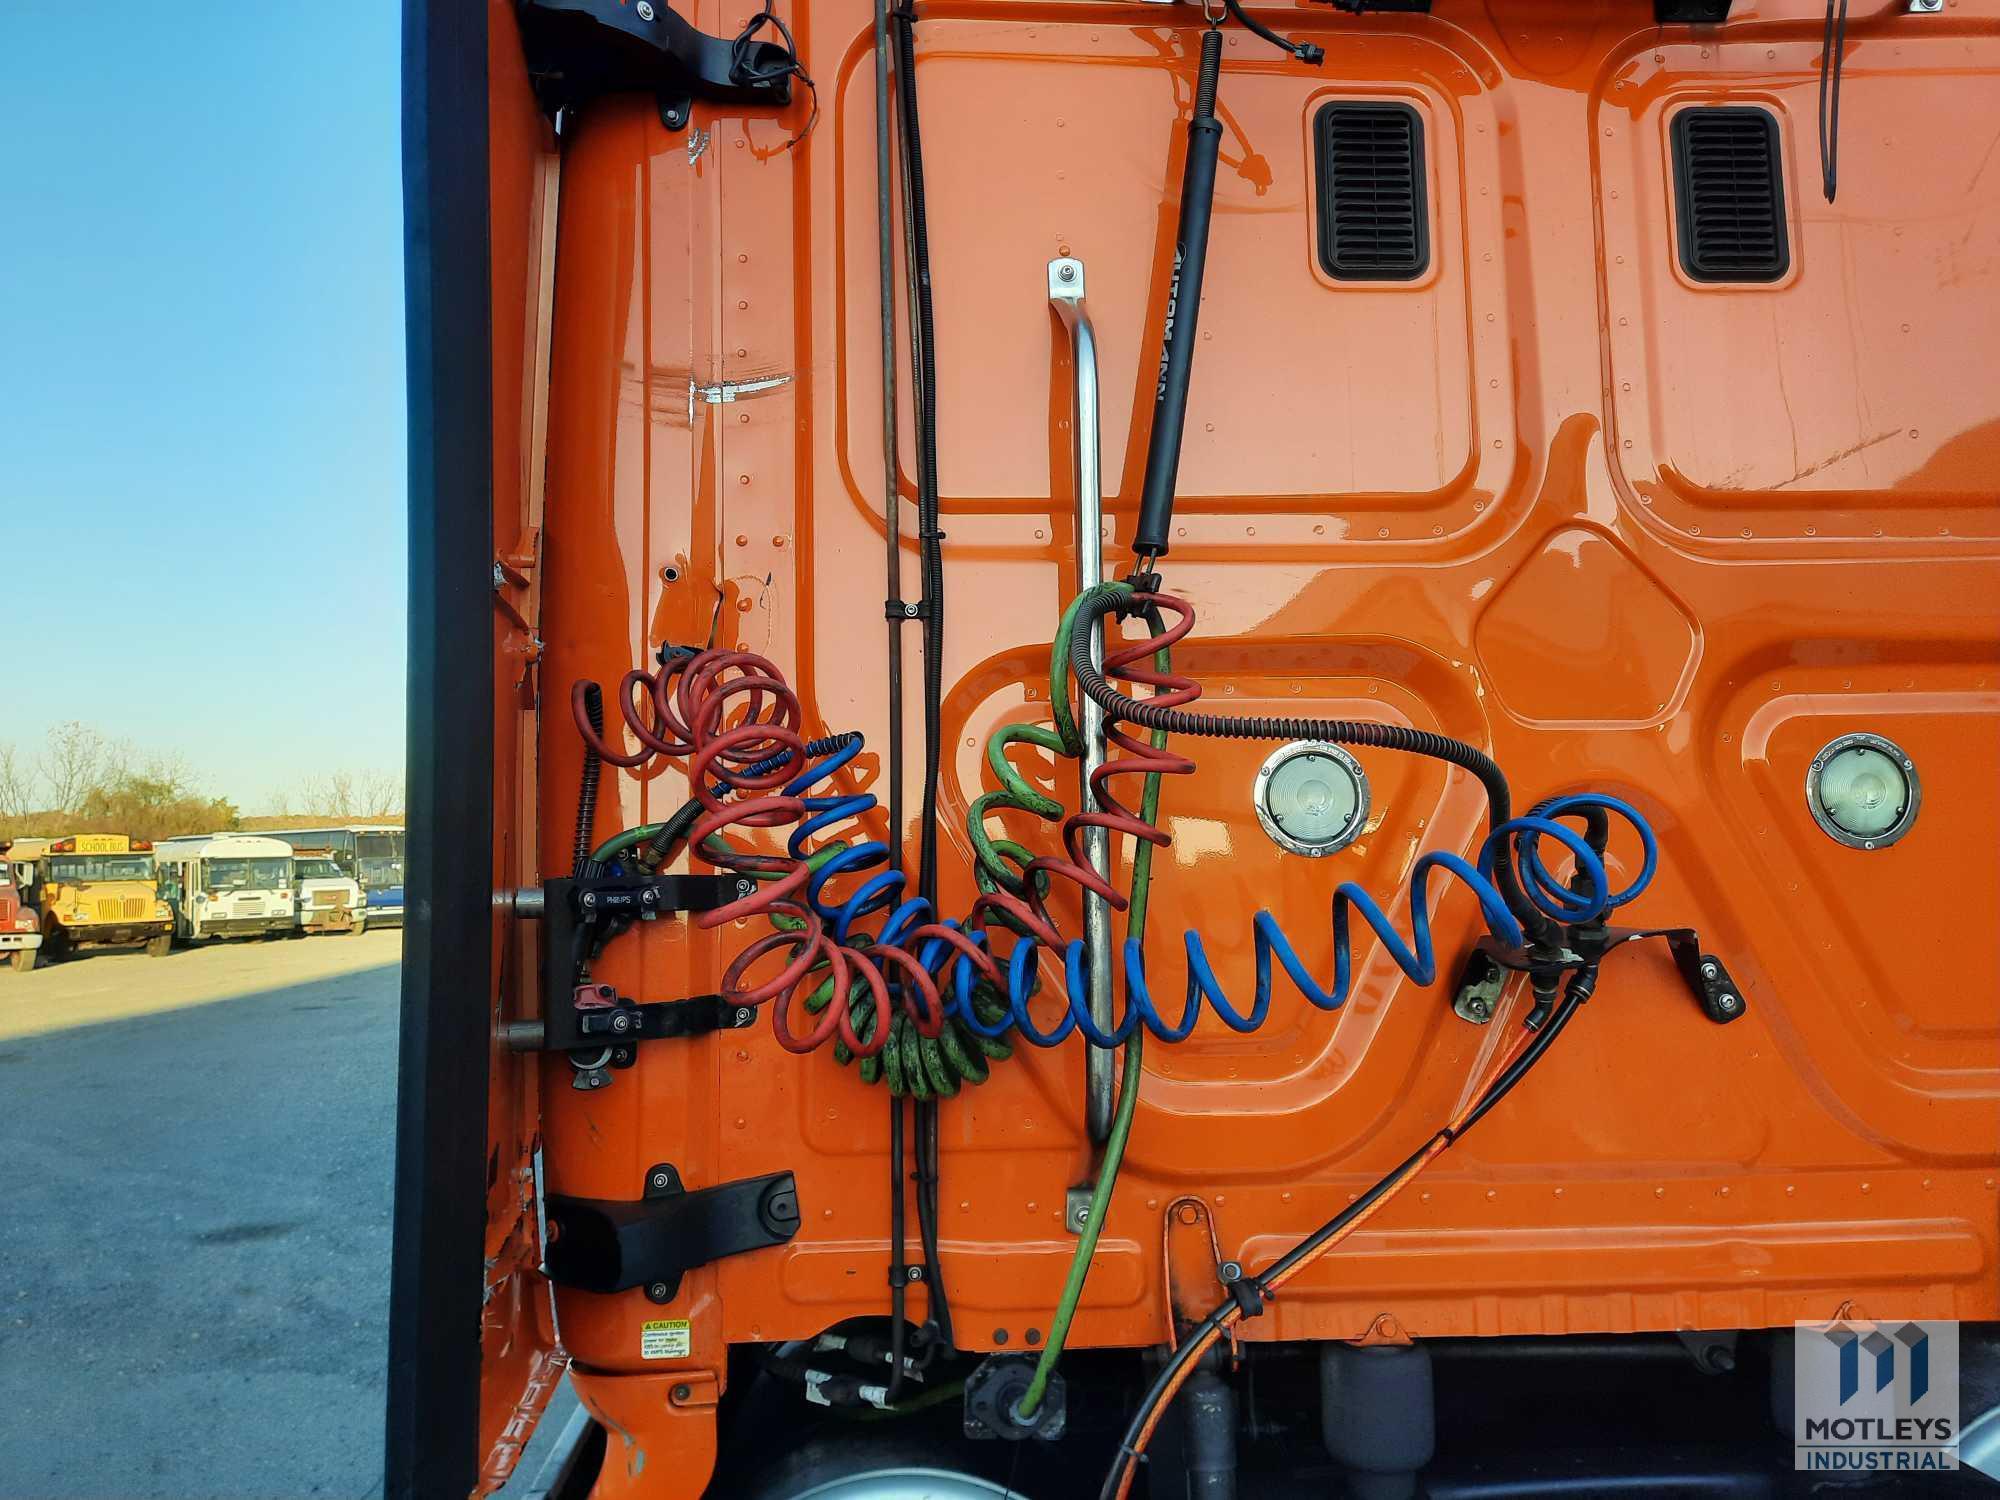 2014 Freightliner Cascadia 125 Truck, VIN # 3AKJGLD54ESFK6368